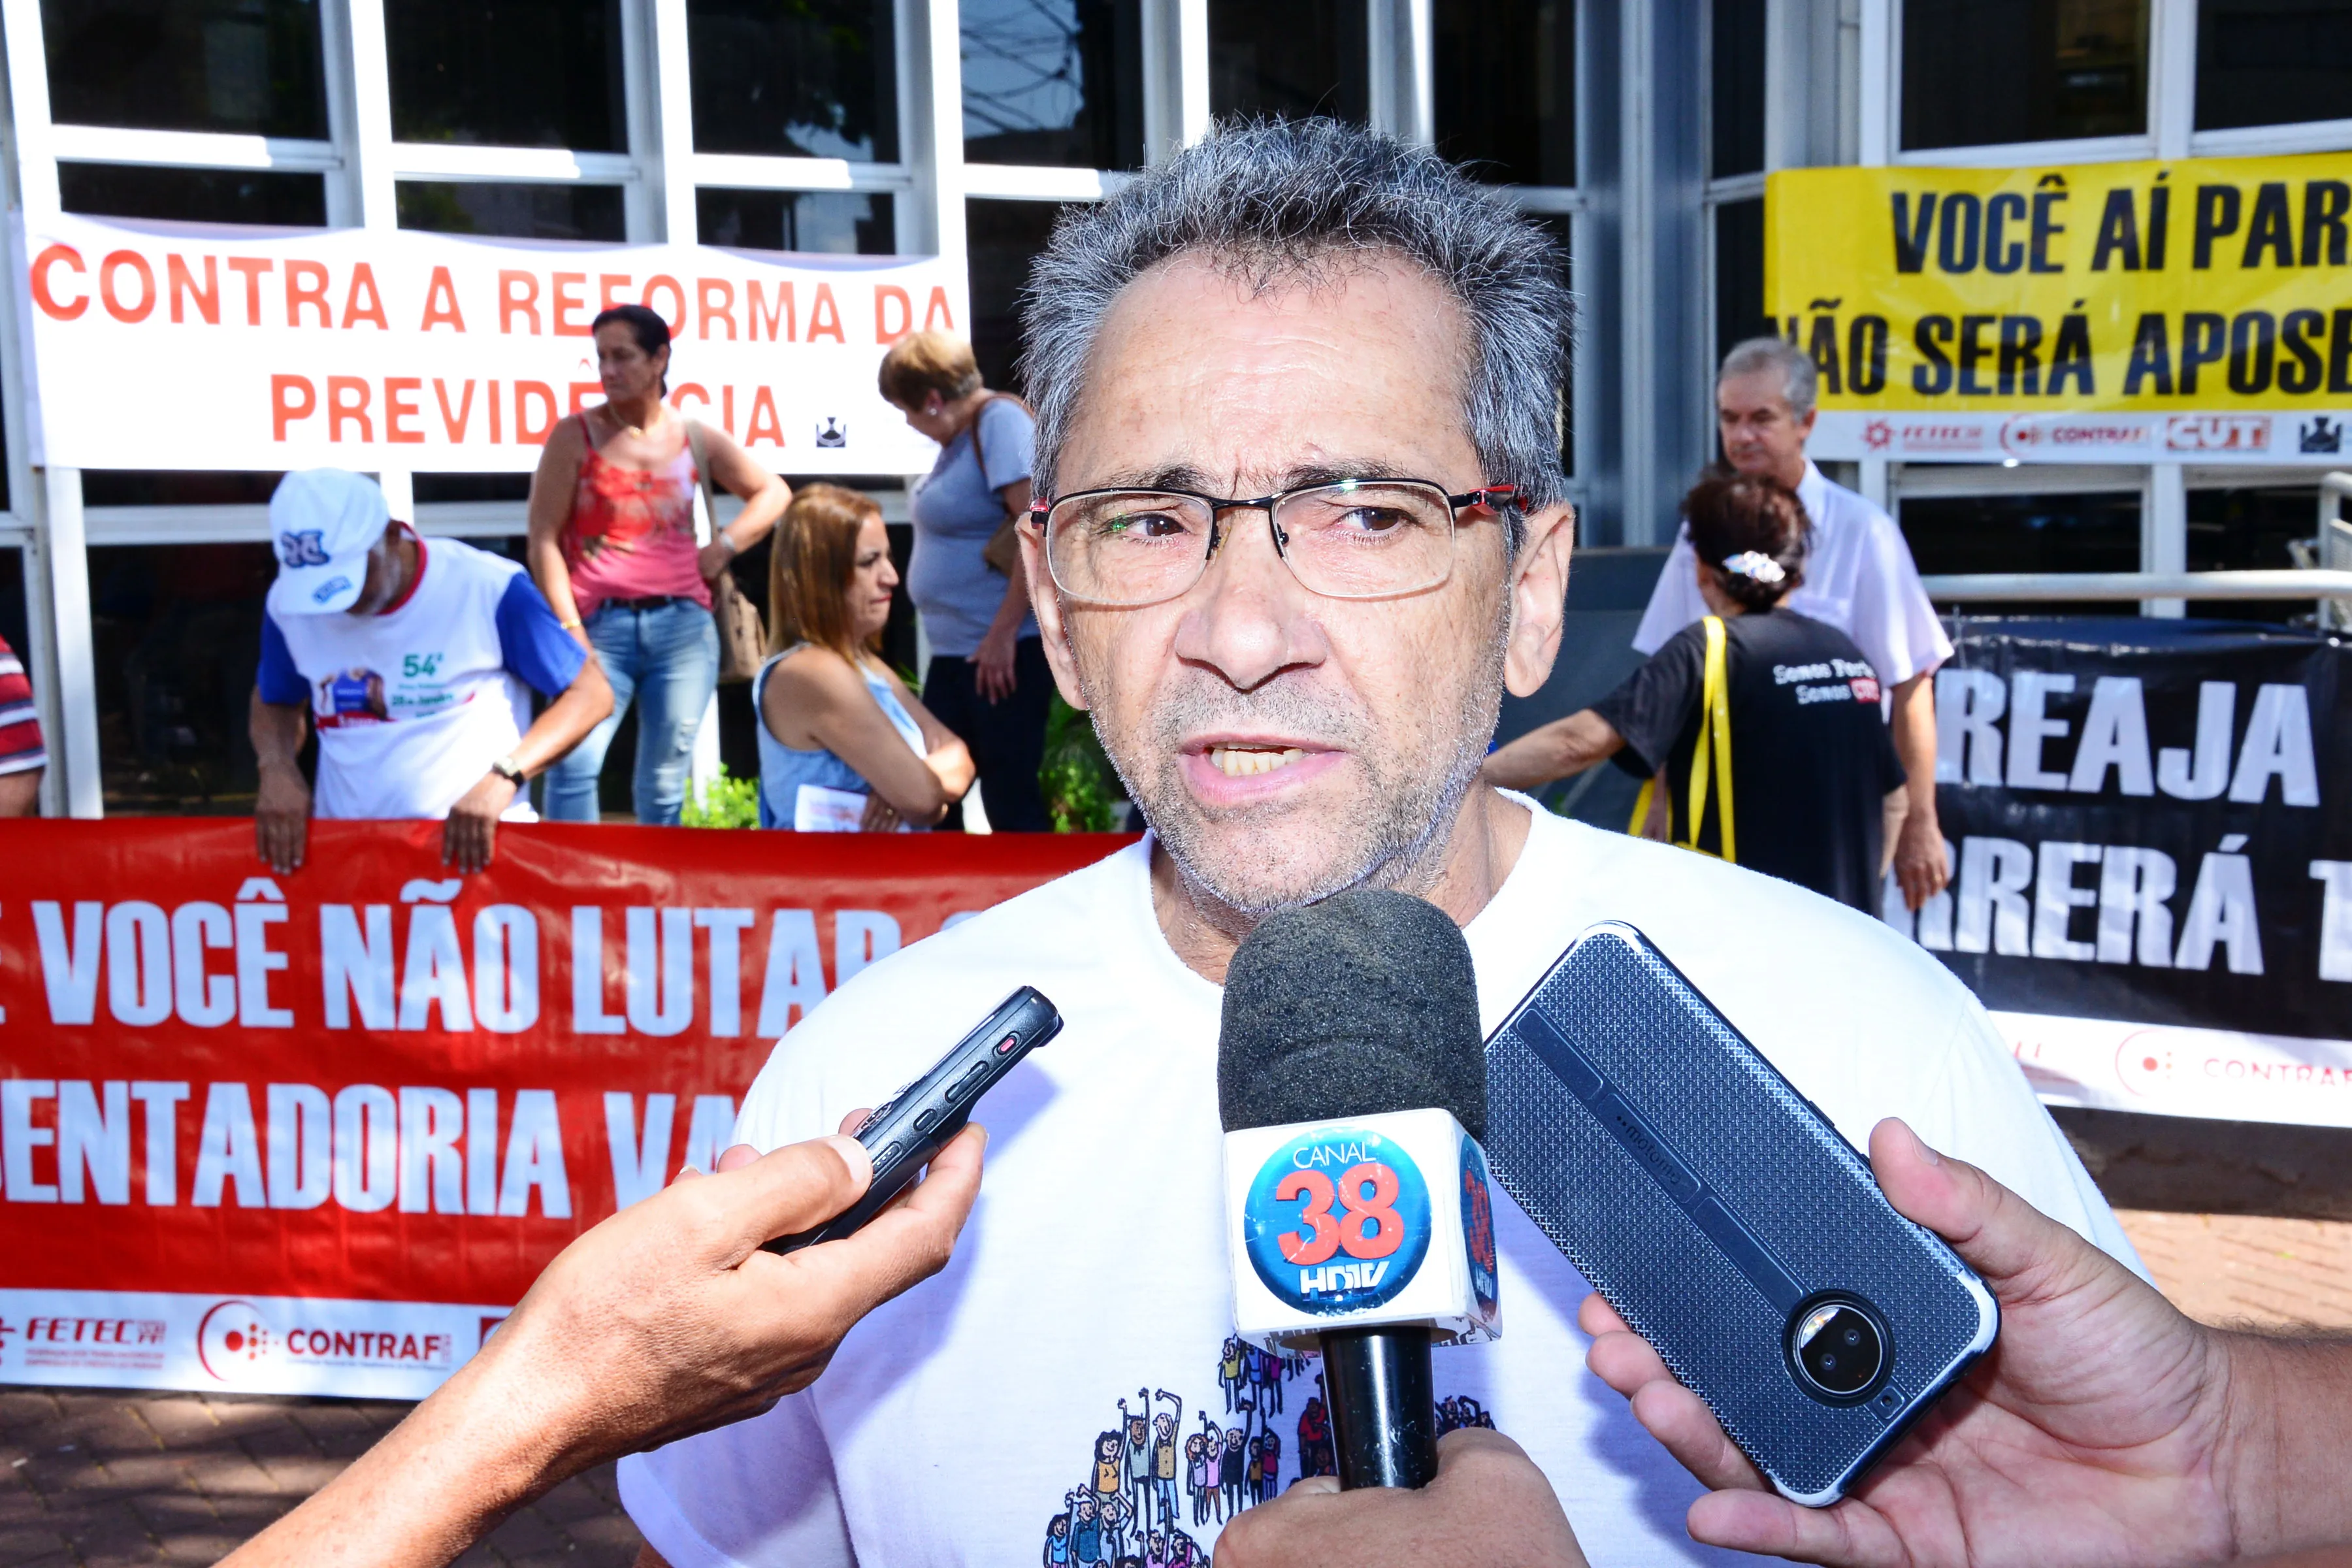 Sindicatos e servidores protestam contra reforma da Previdência em Apucarana